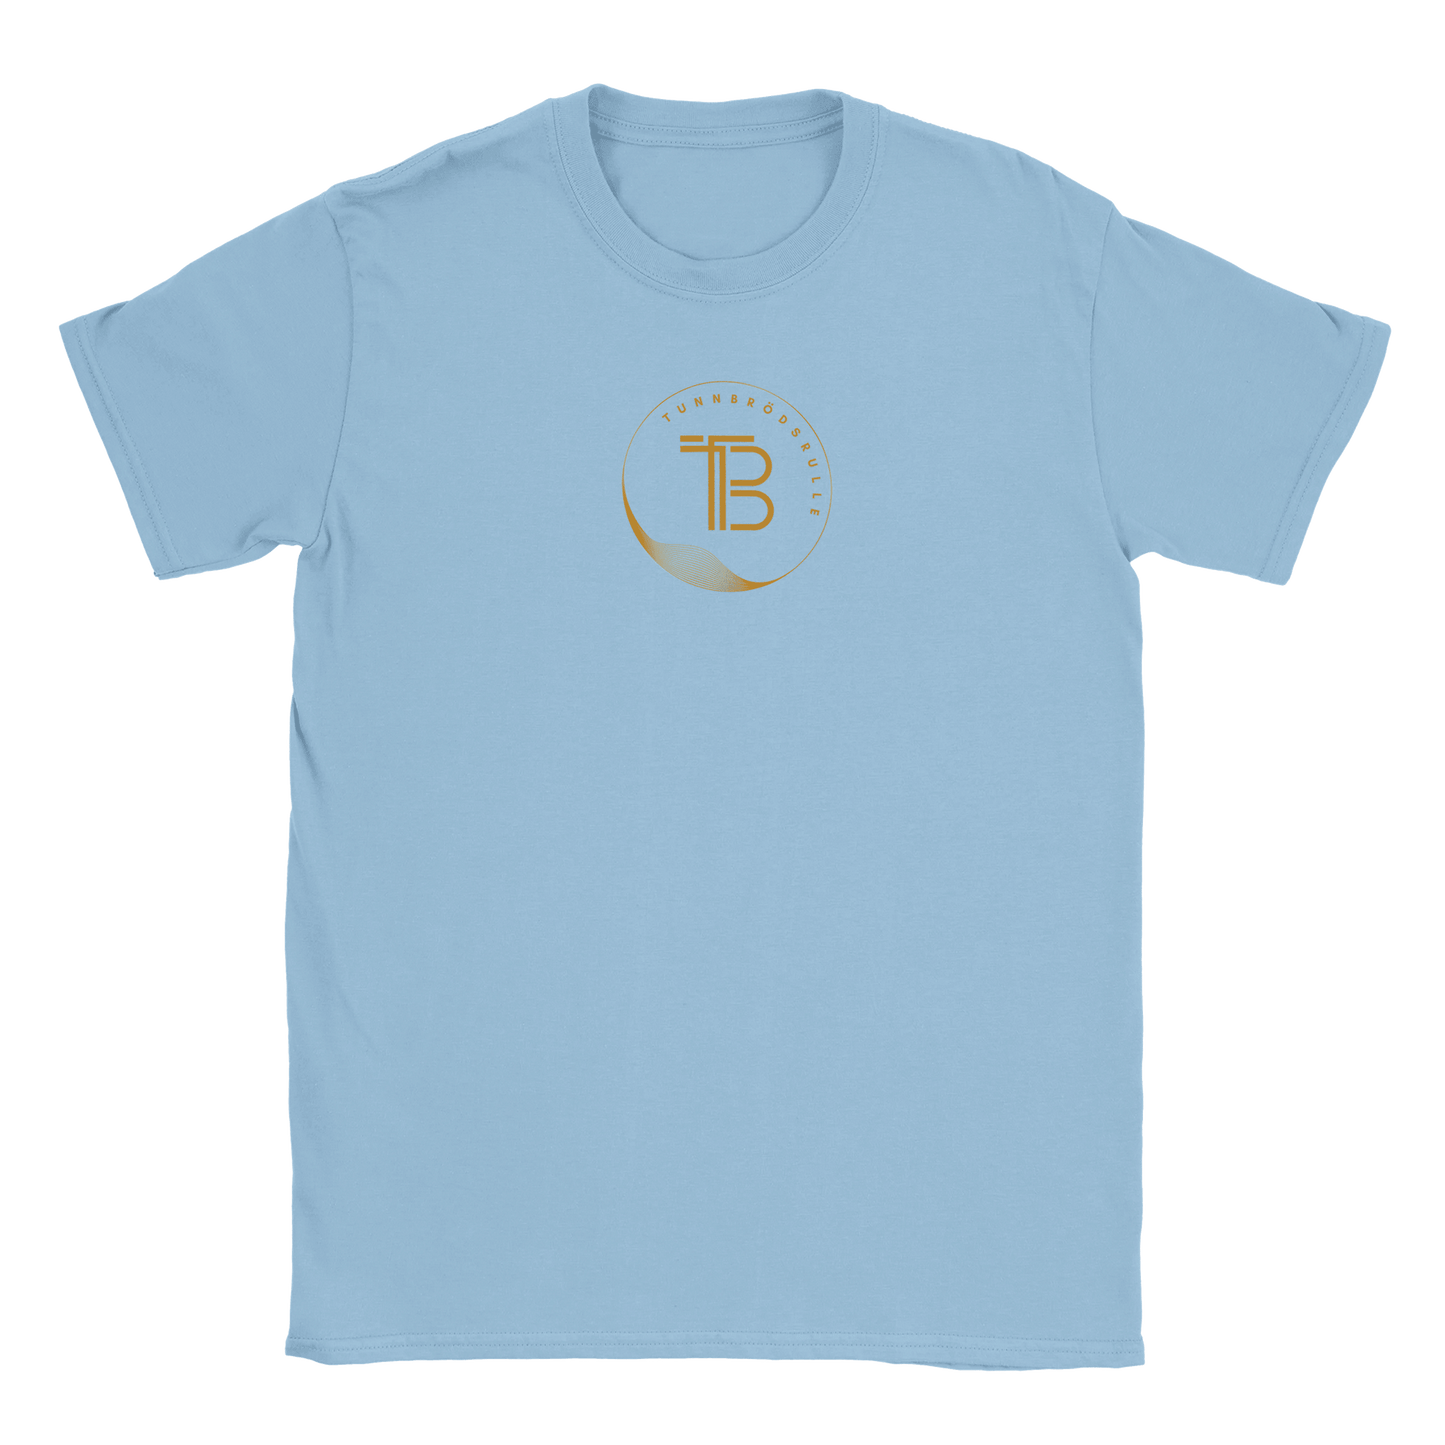 Tunnbrödsrulle - T-shirt Ljusblå